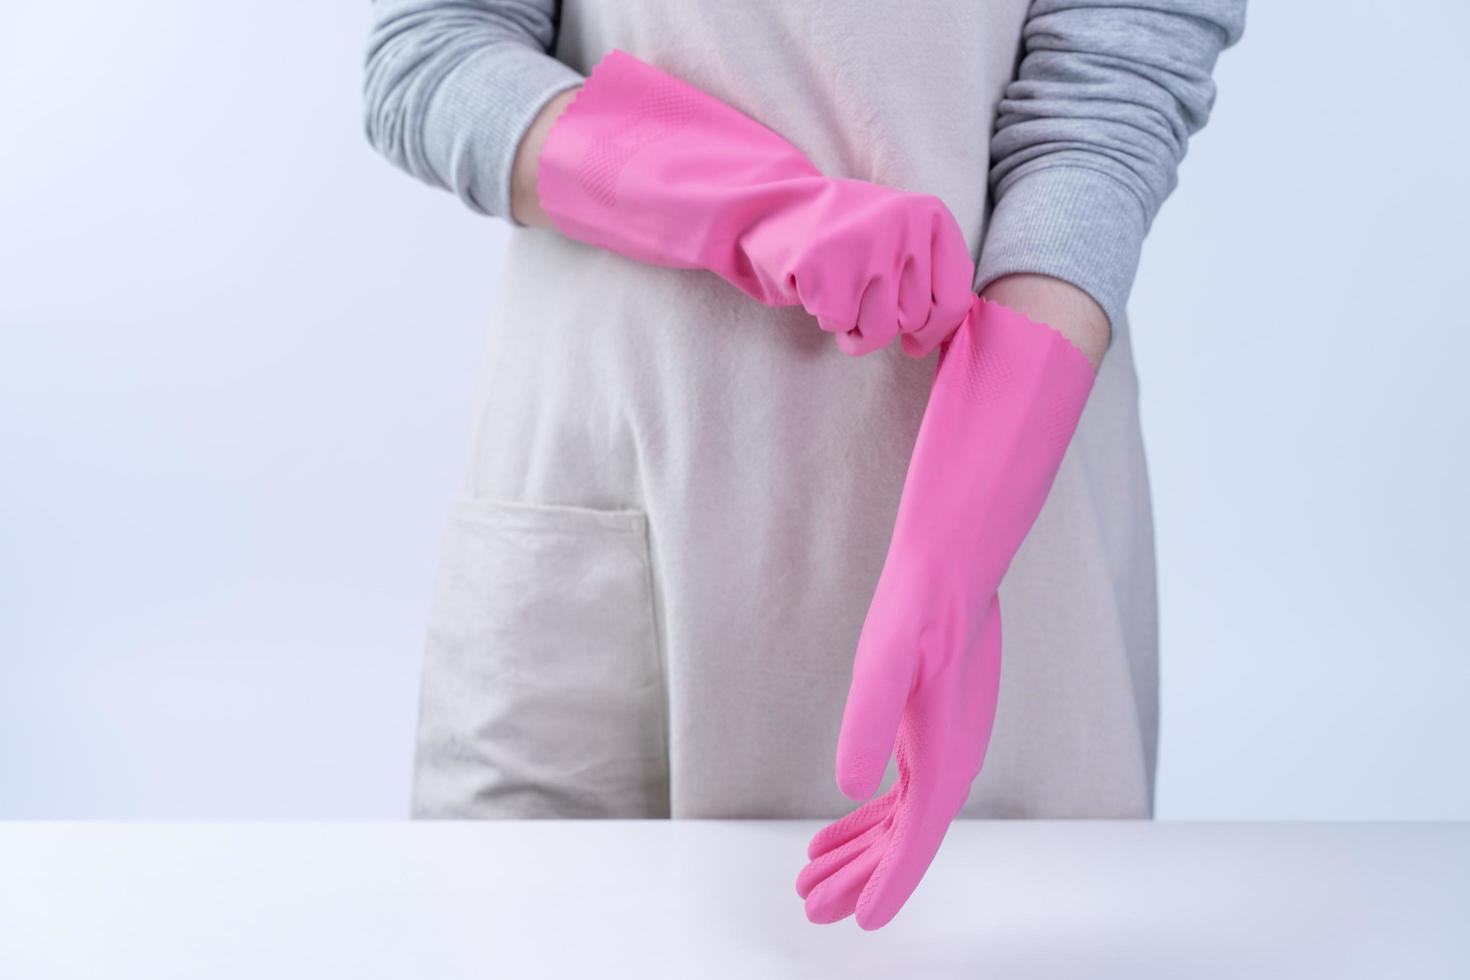 jovem governanta de avental está usando luvas cor de rosa para limpar a mesa, conceito de prevenção de infecção por vírus, serviço de limpeza, close-up. foto